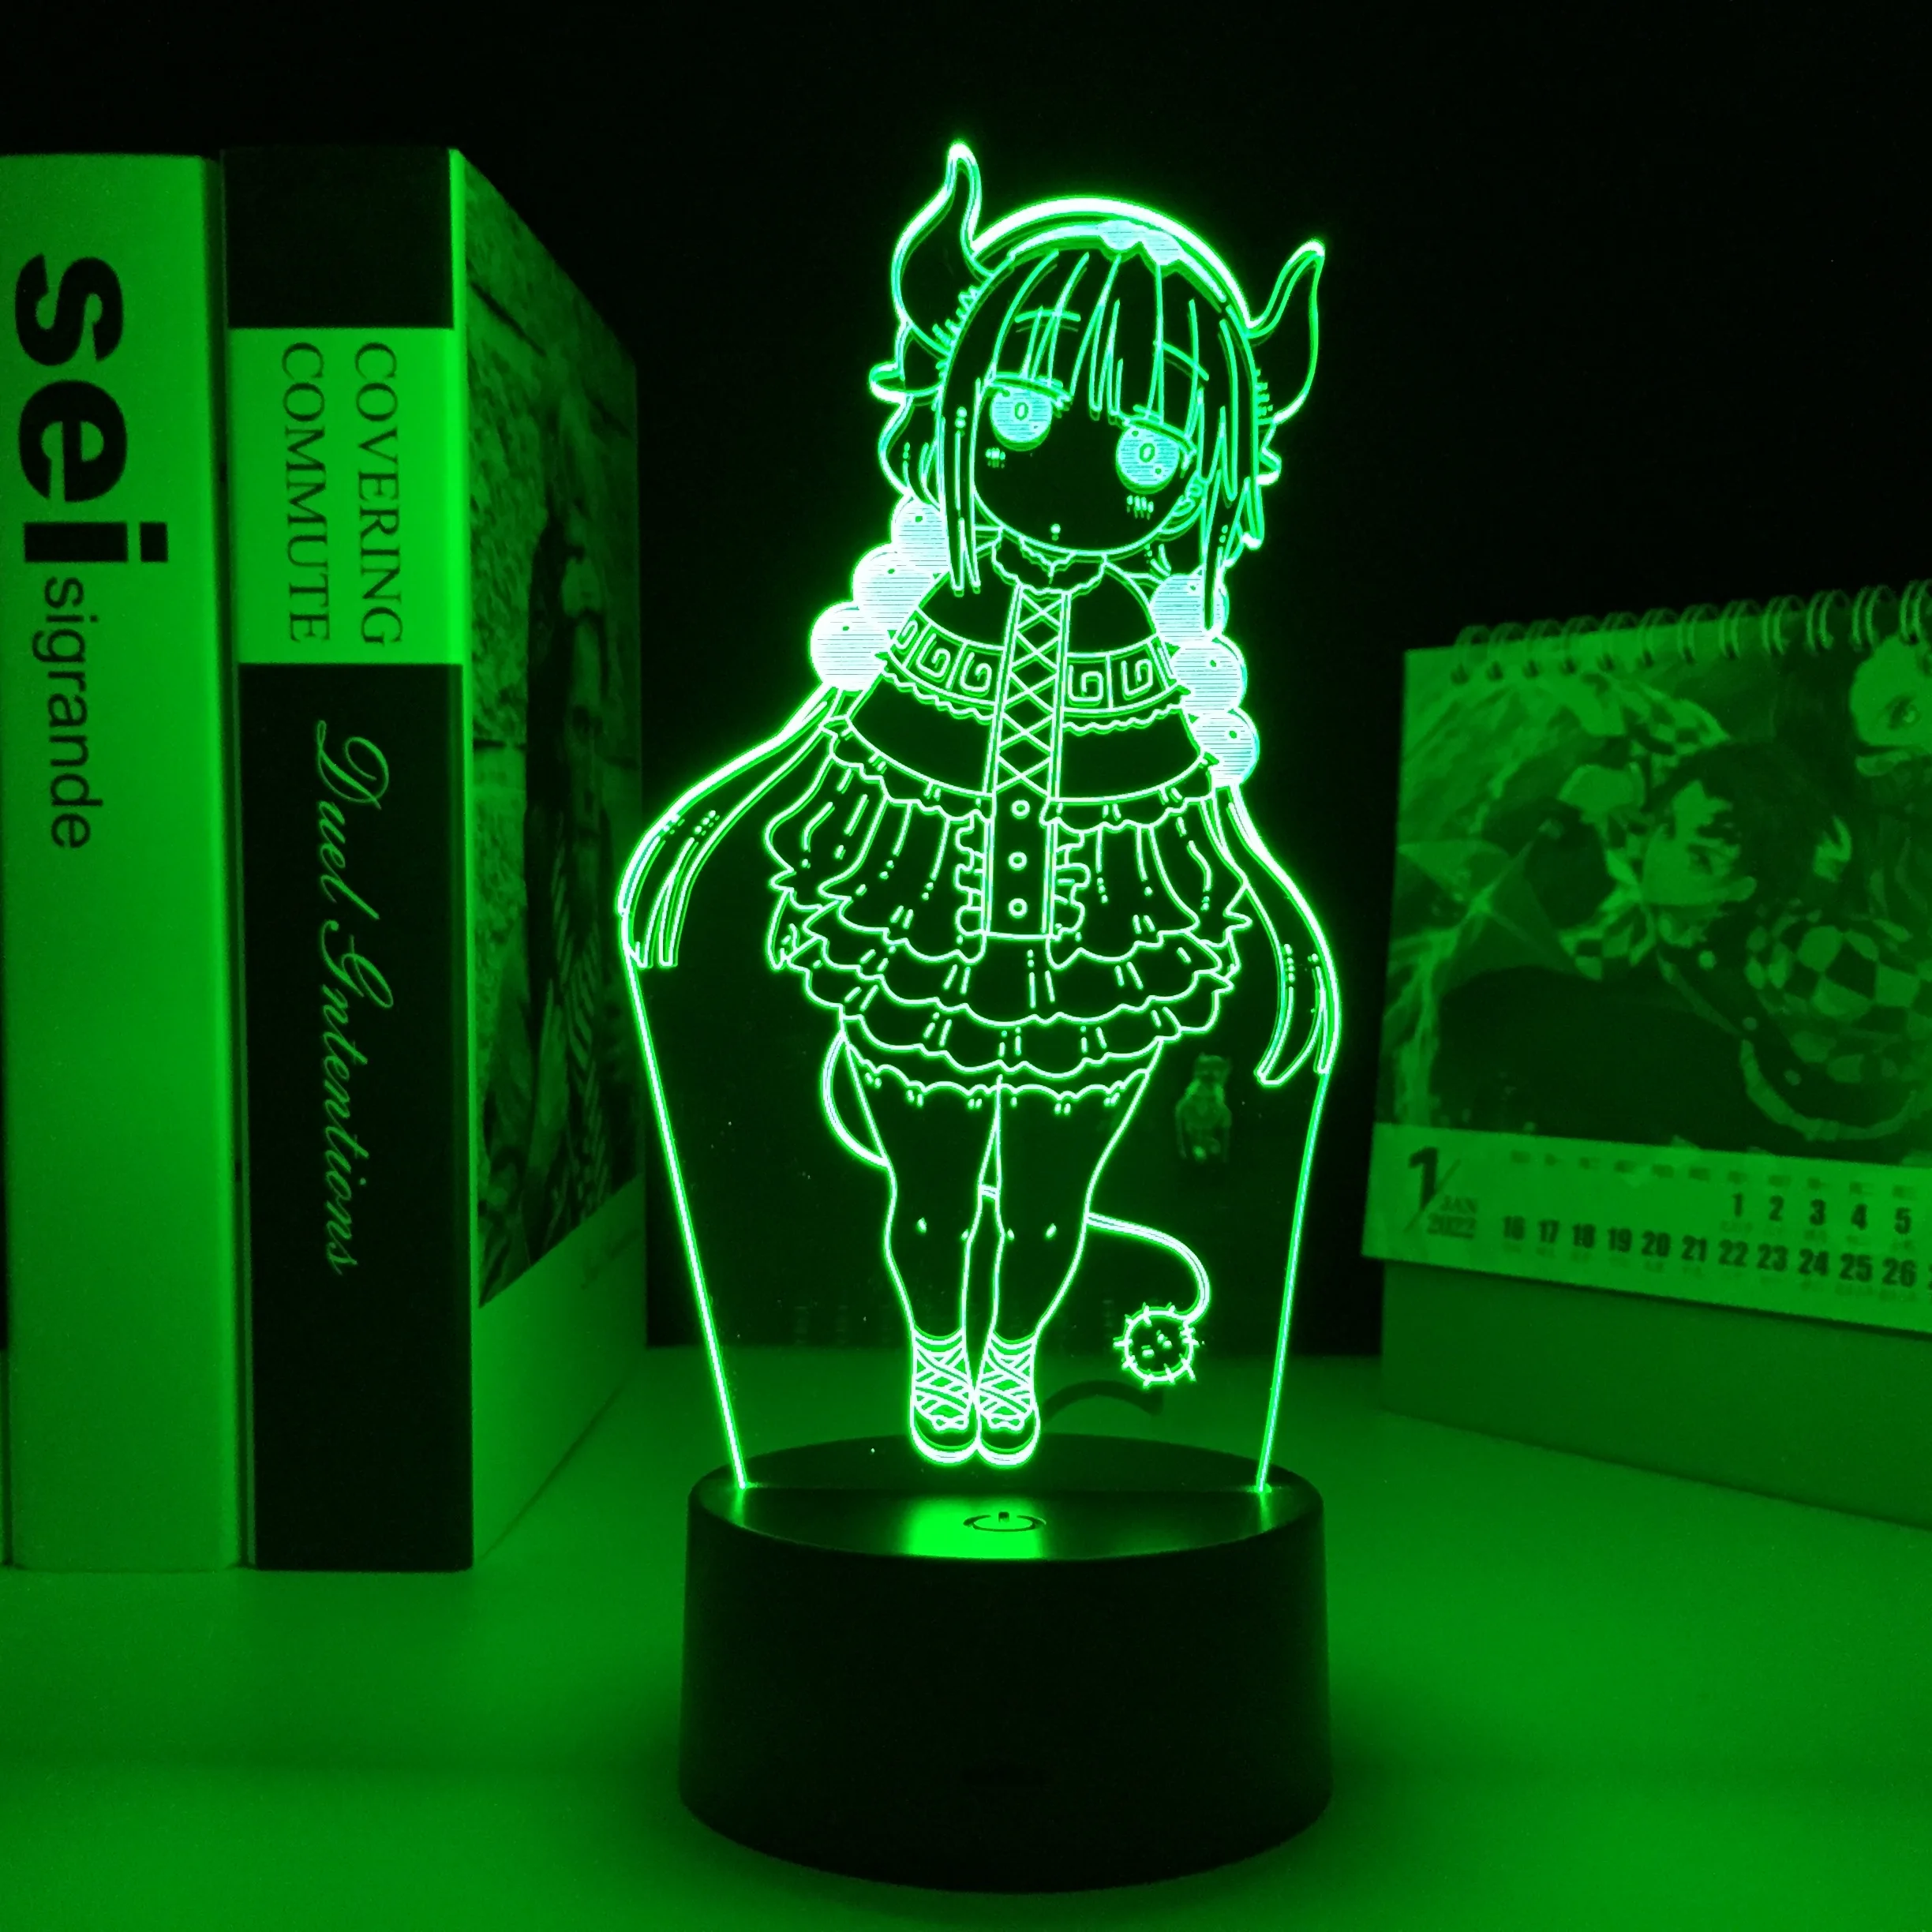 

Miss Kobayashi's Dragon Maid, фигурка Kanna, светодиодный ночсветильник для спальни, украшение, подарок на день рождения, лампа манга Kanna светильник с аниме ...